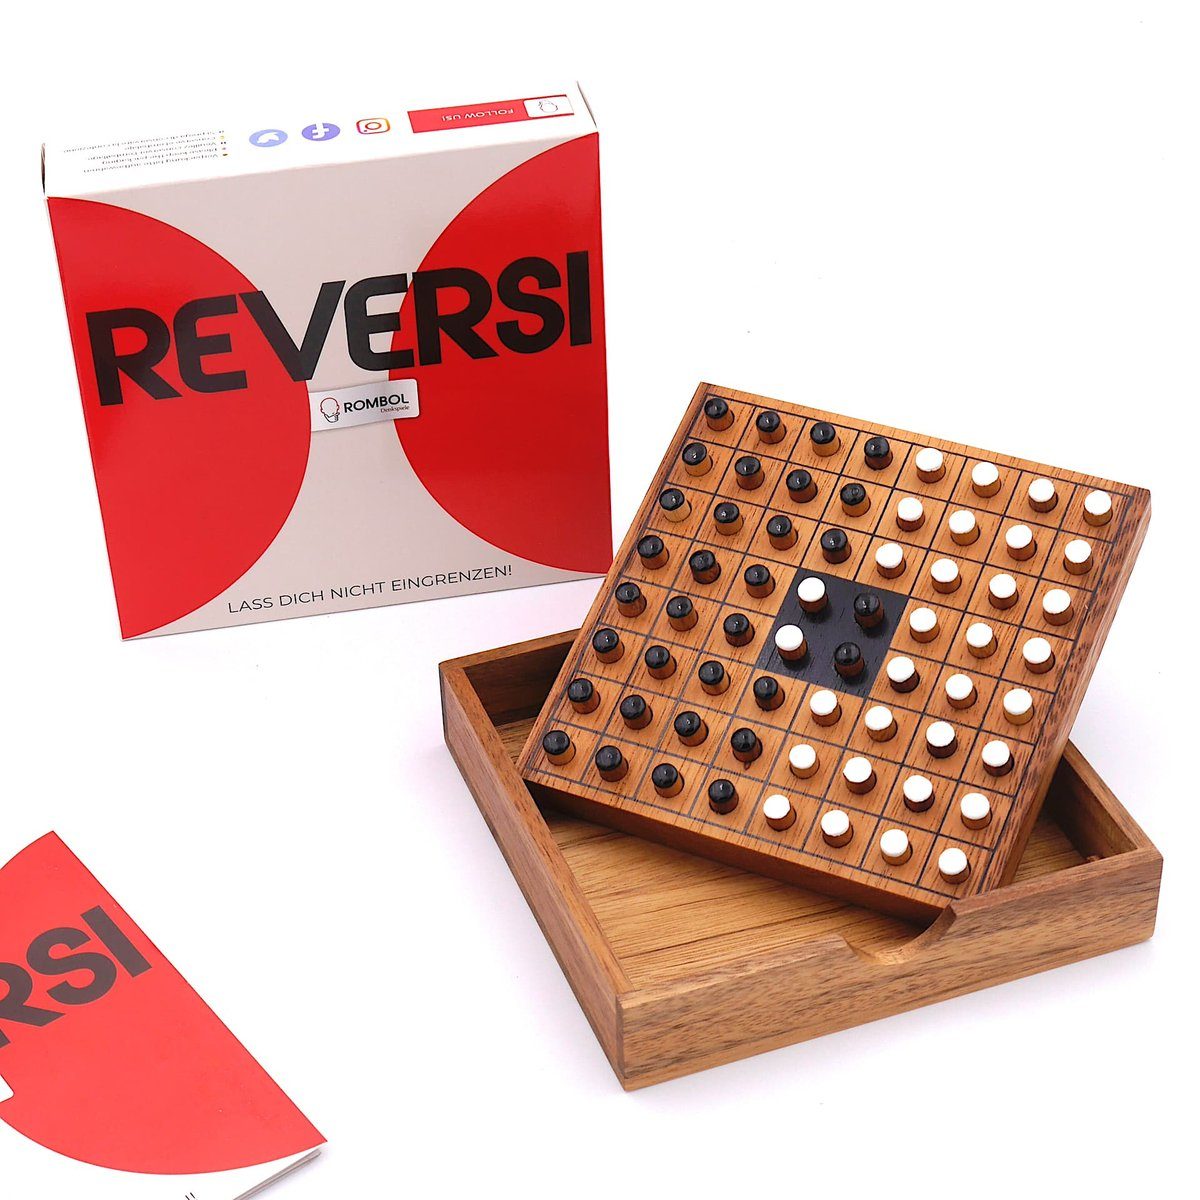 ROMBOL Denkspiele Spiel, Brettspiel Reversi – Interessantes Strategiespiel für 2 Personen aus edlem Holz, Holzspiel weiß/schwarz